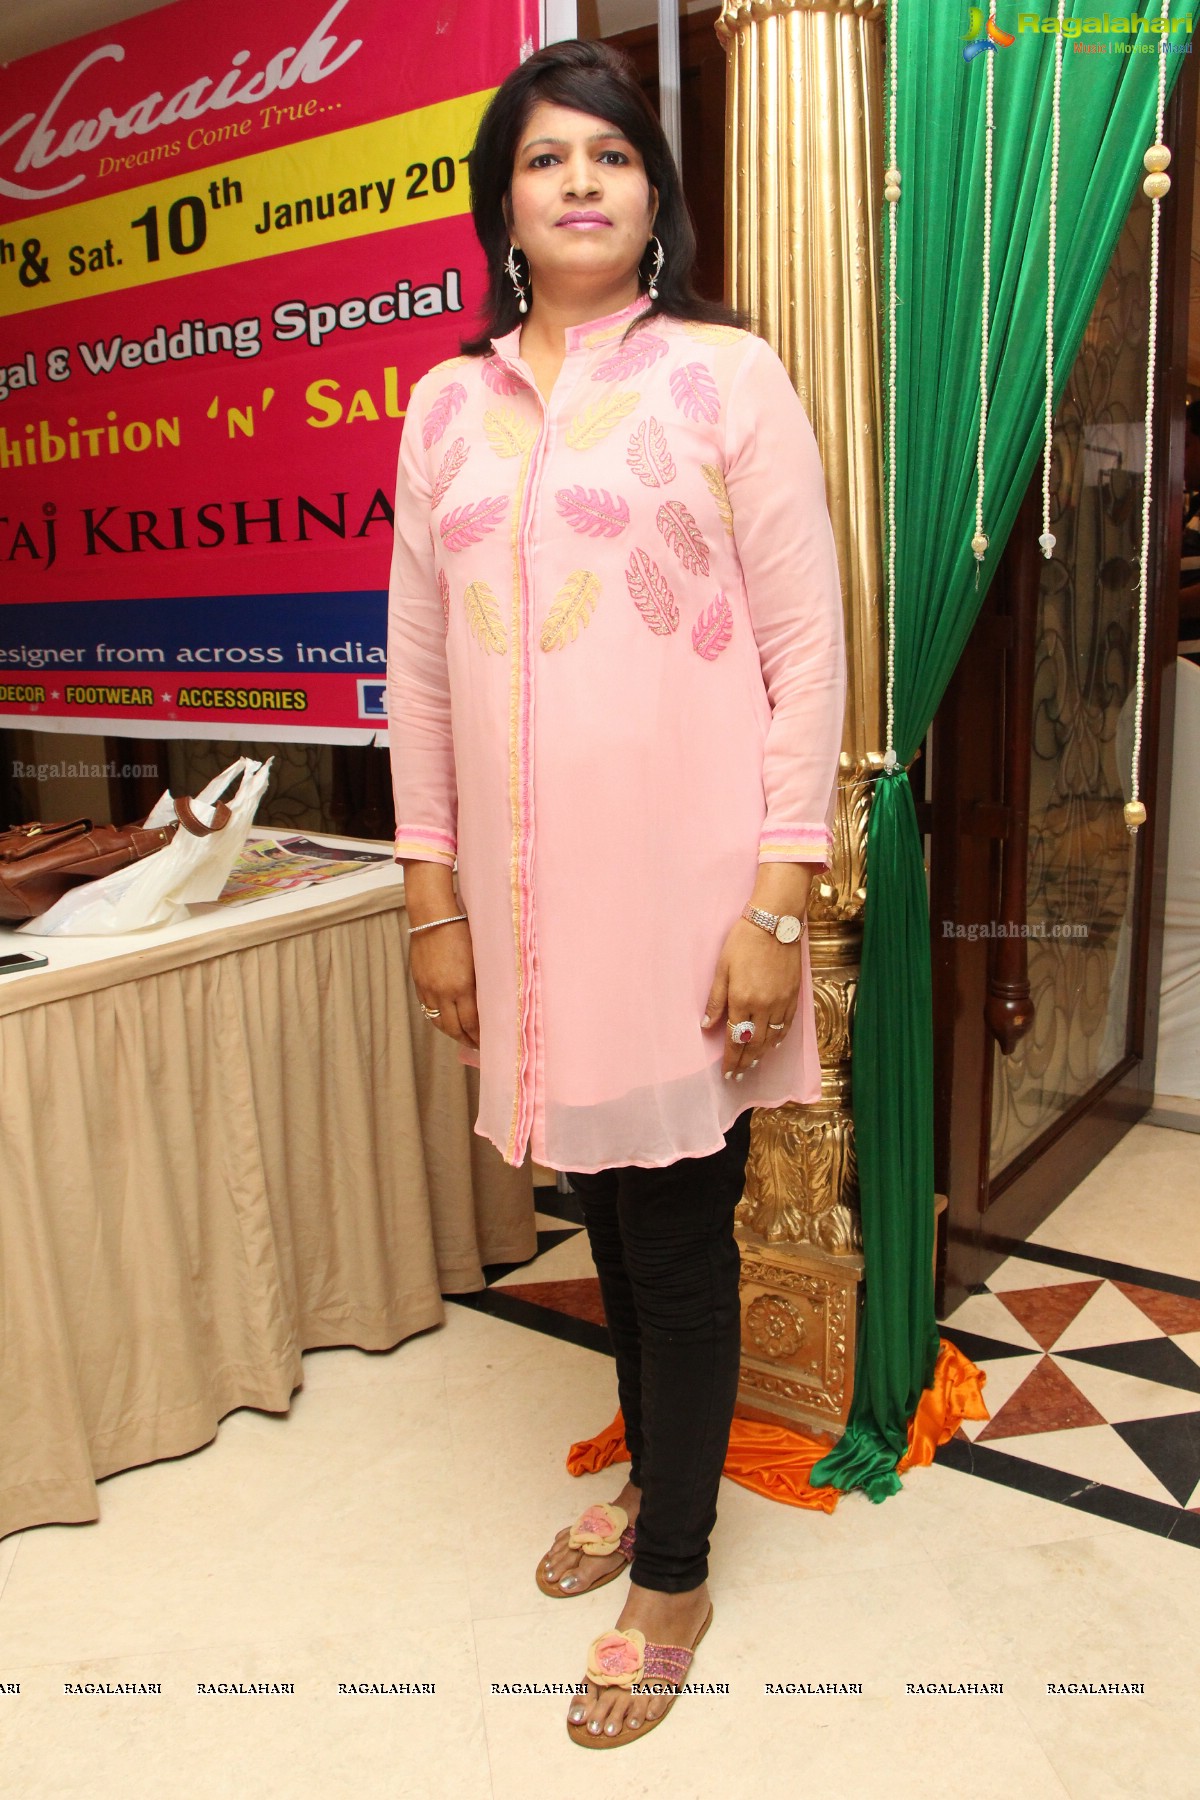 Khwaaish Sankranti-Wedding Special Exhibition 2015 at Taj Krishna